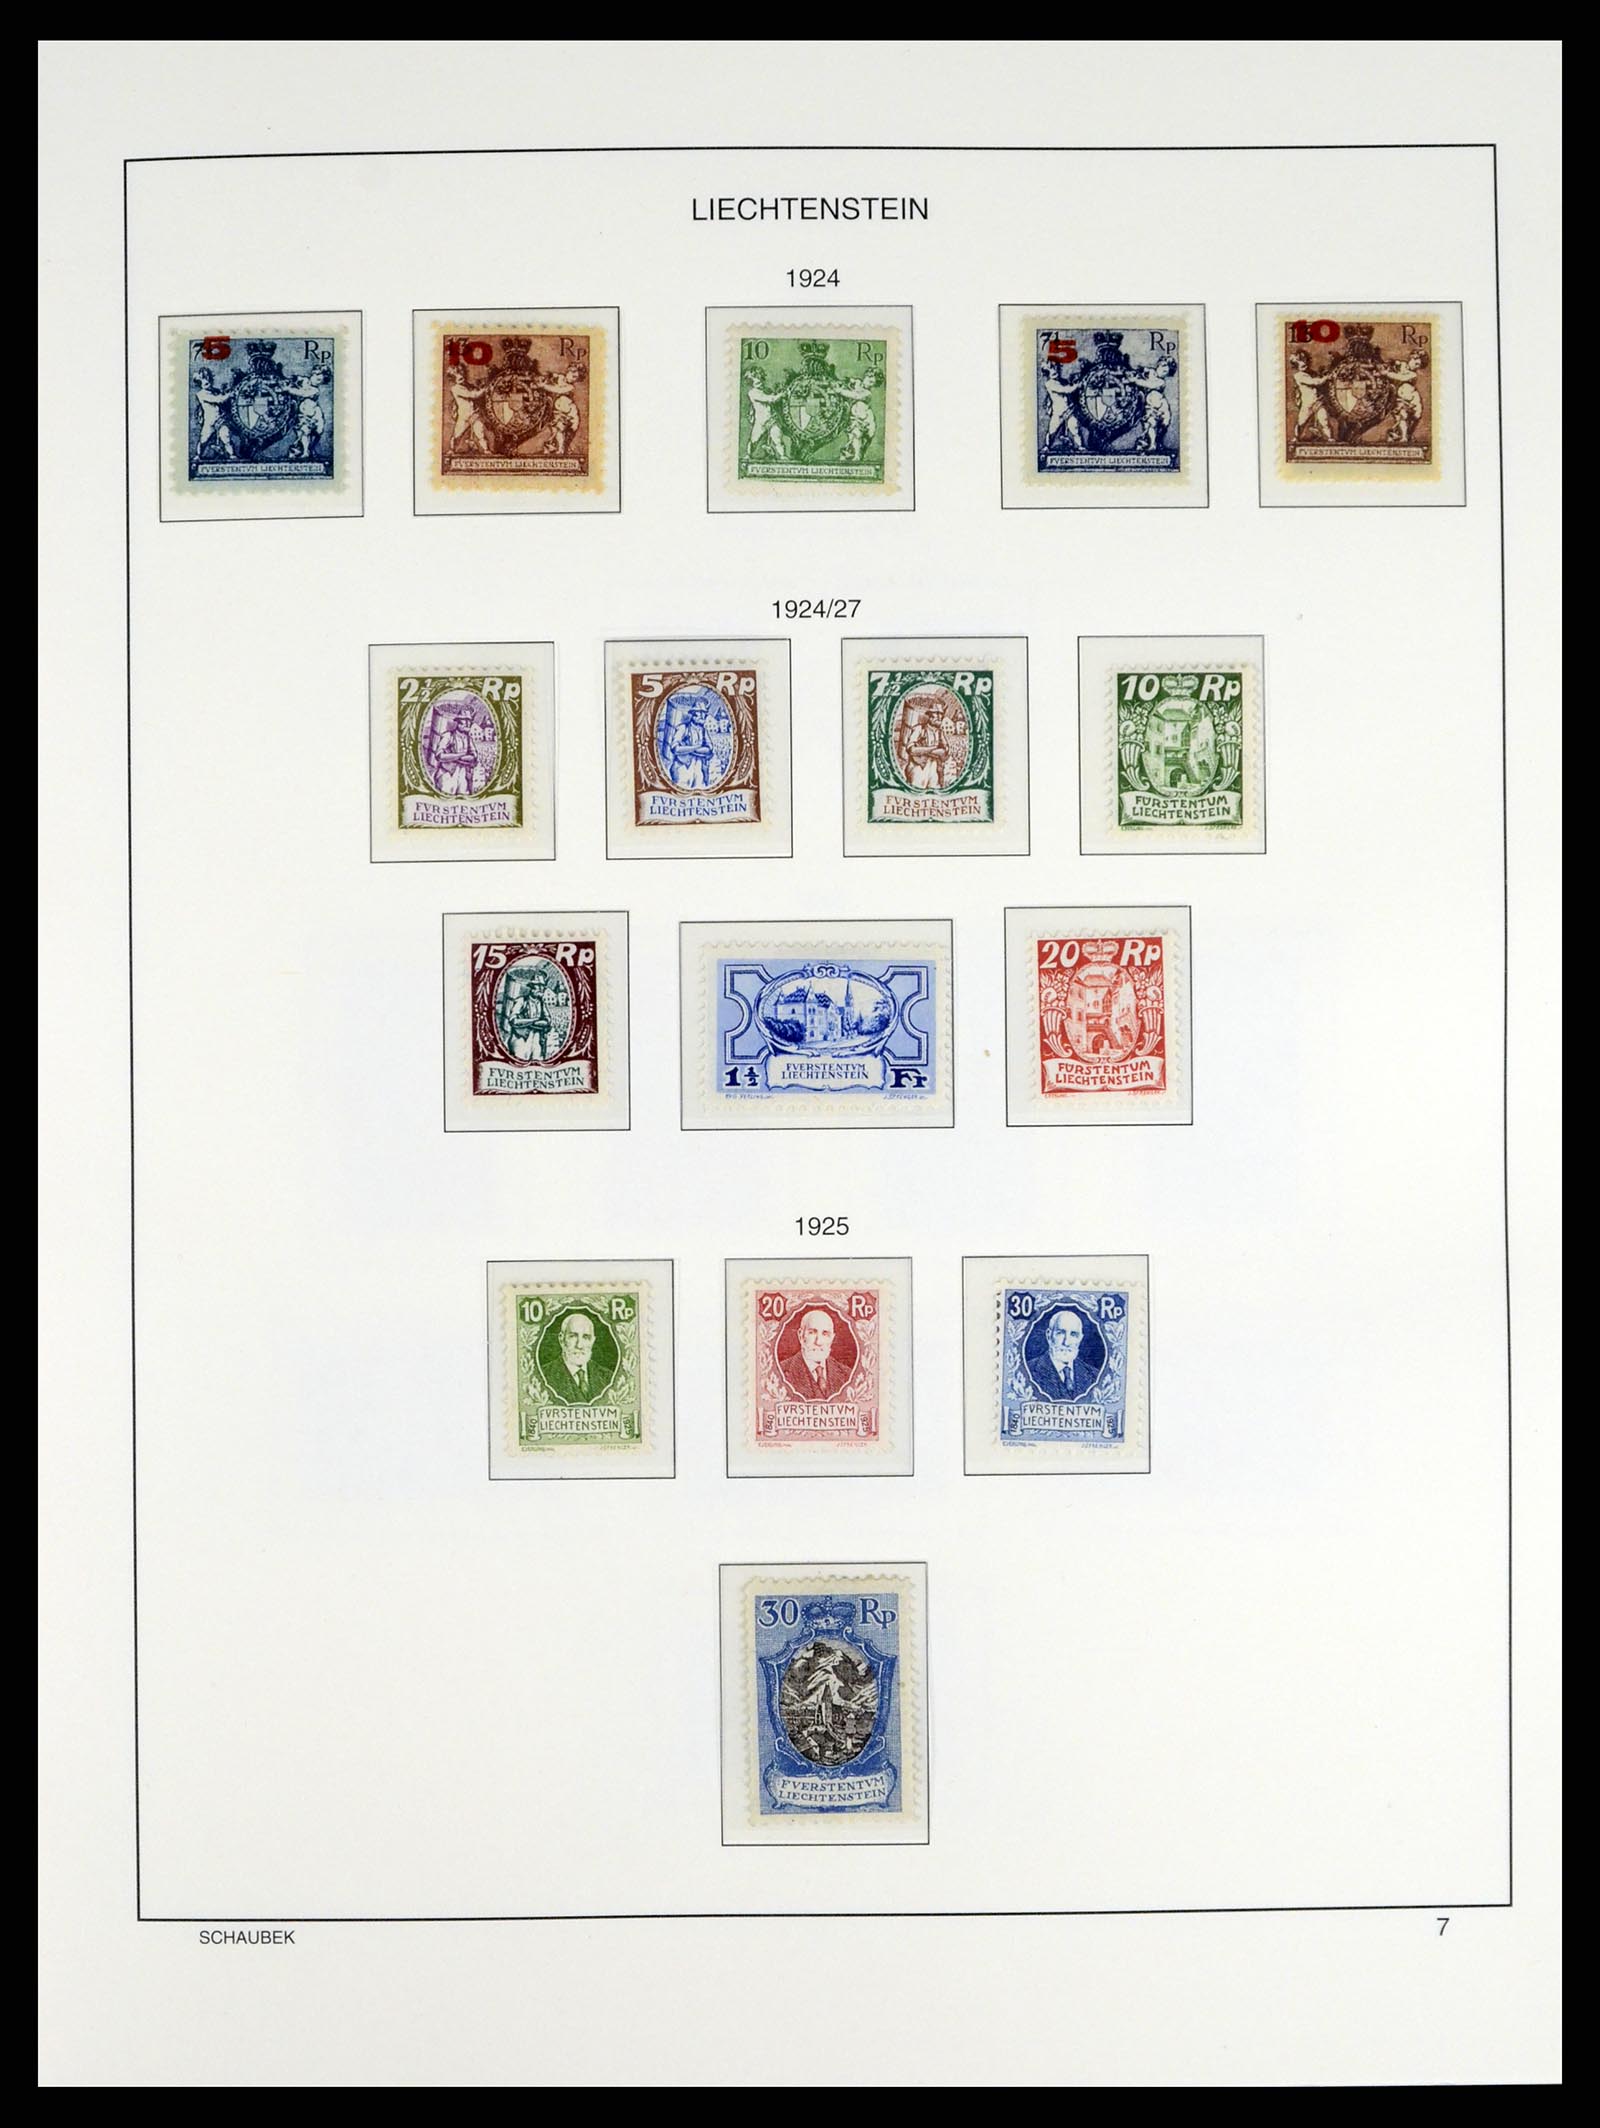 37547 007 - Stamp collection 37547 Liechtenstein 1912-2011.